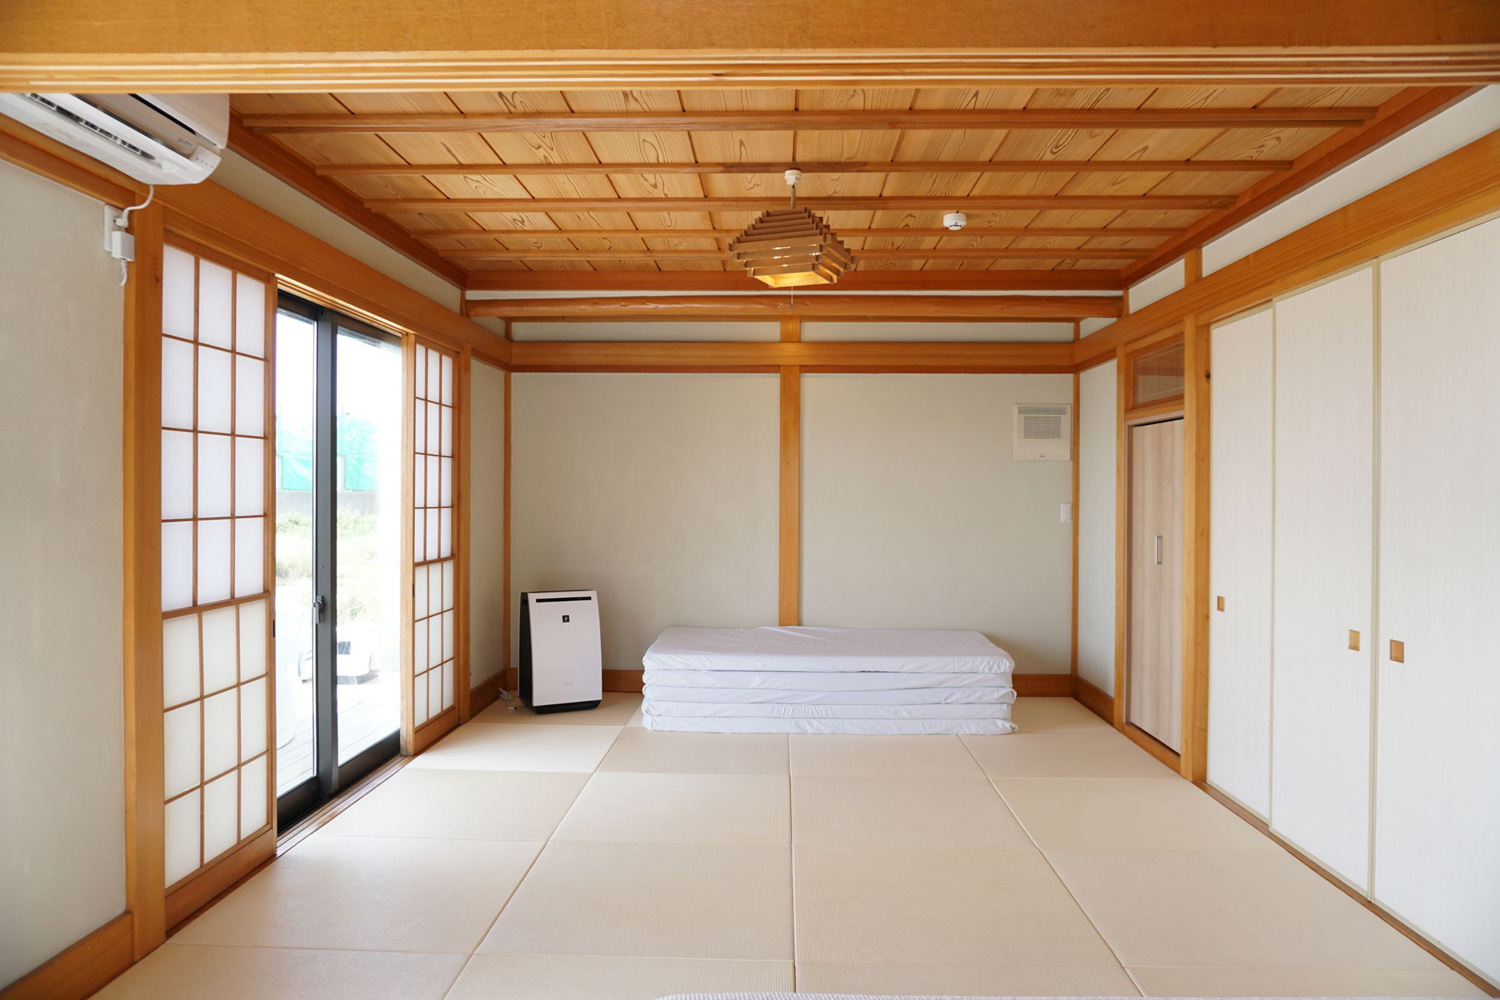 琉球畳を敷き詰めた和室